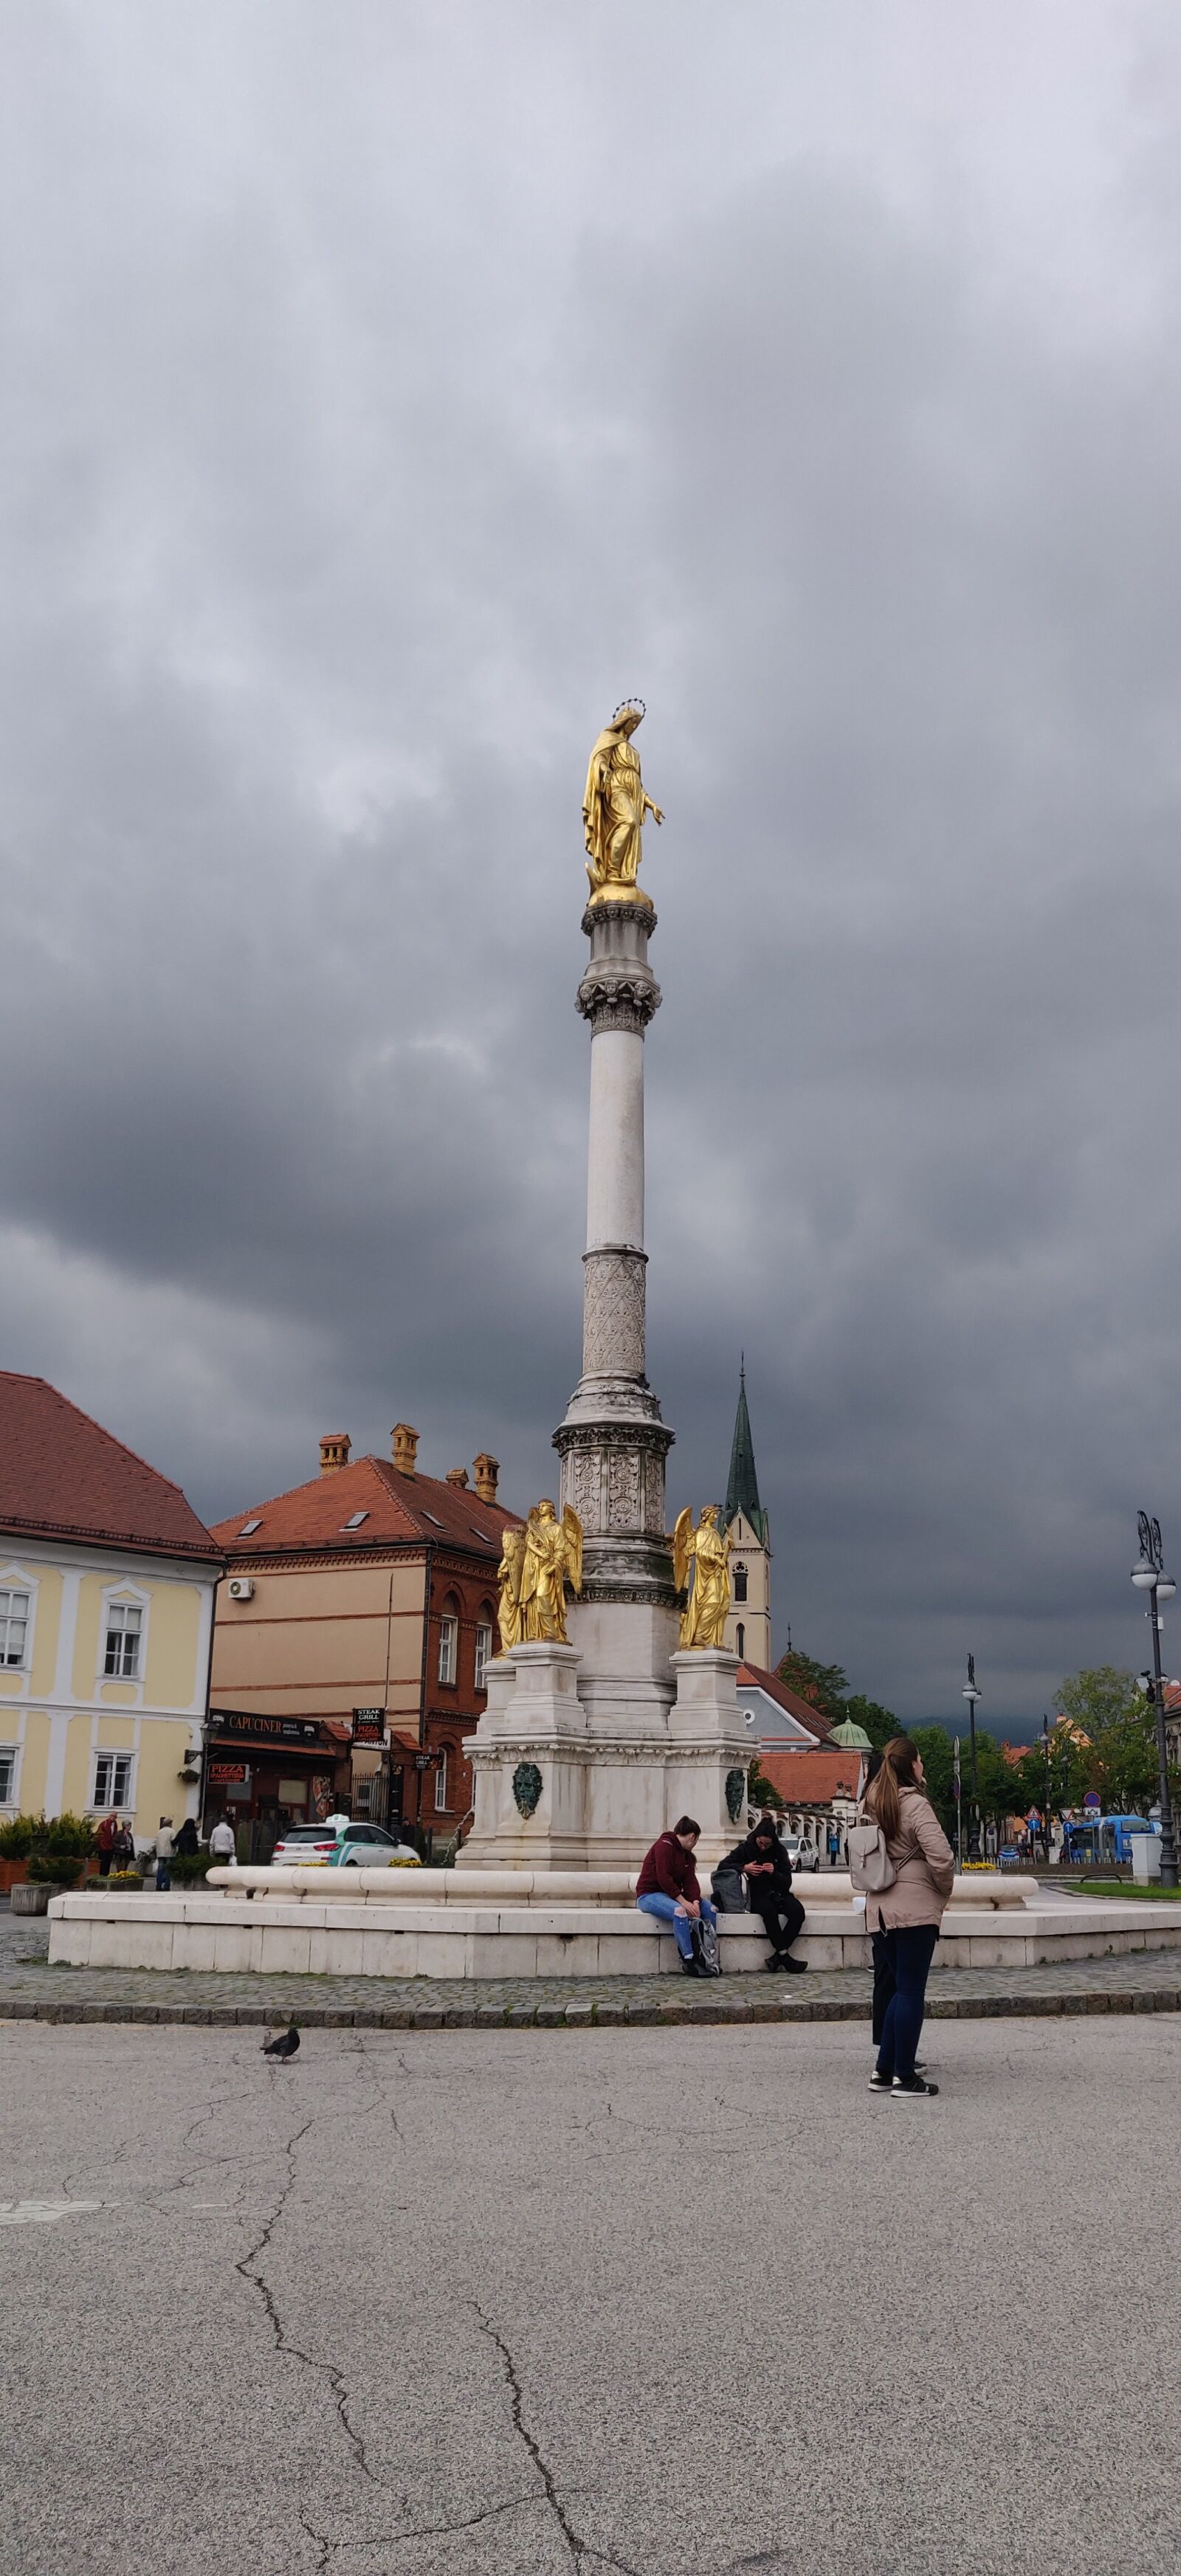 OnePlus A6010 sample photo. Zagreb, sky, city photography